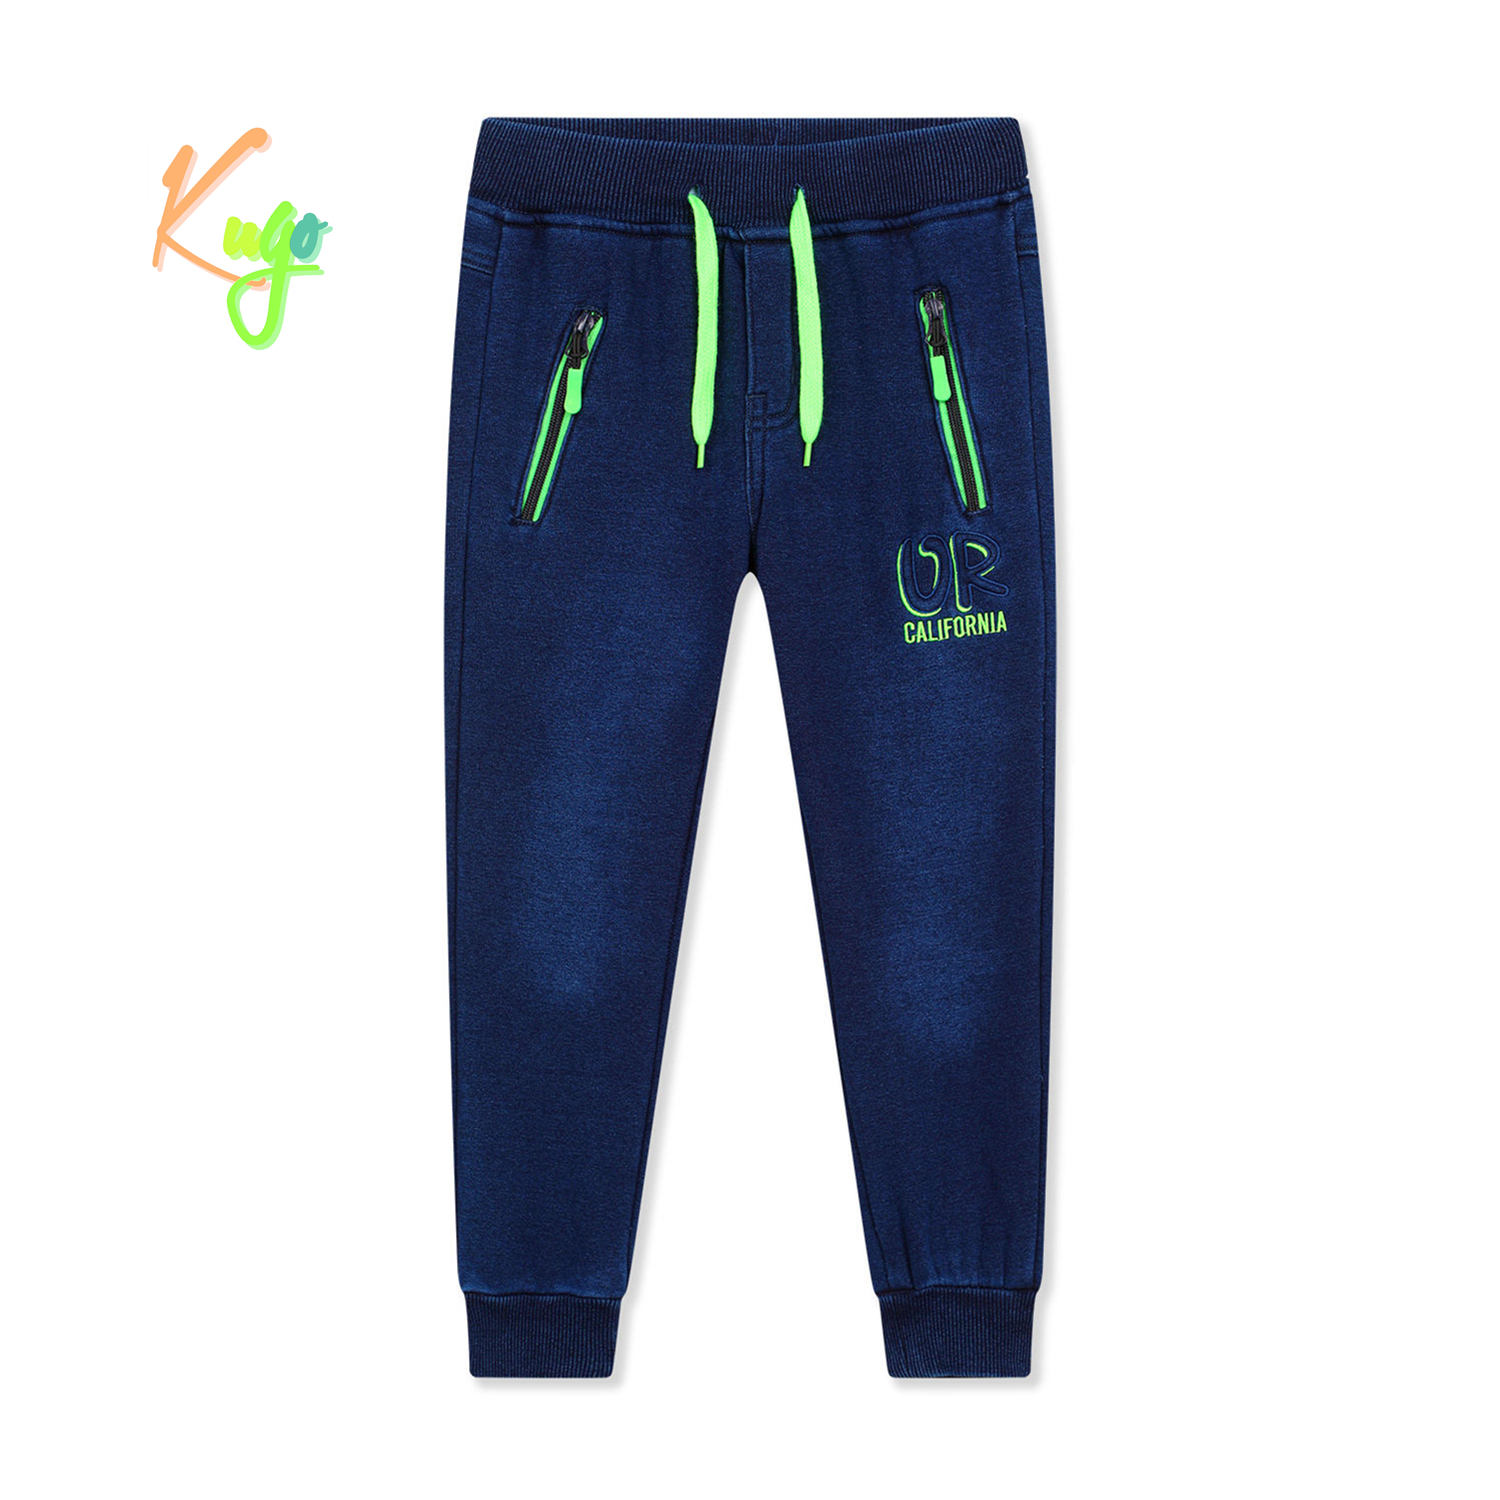 Chlapecké riflové kalhoty/ tepláky, zateplené - KUGO FK0317, modrá Barva: Modrá, Velikost: 116